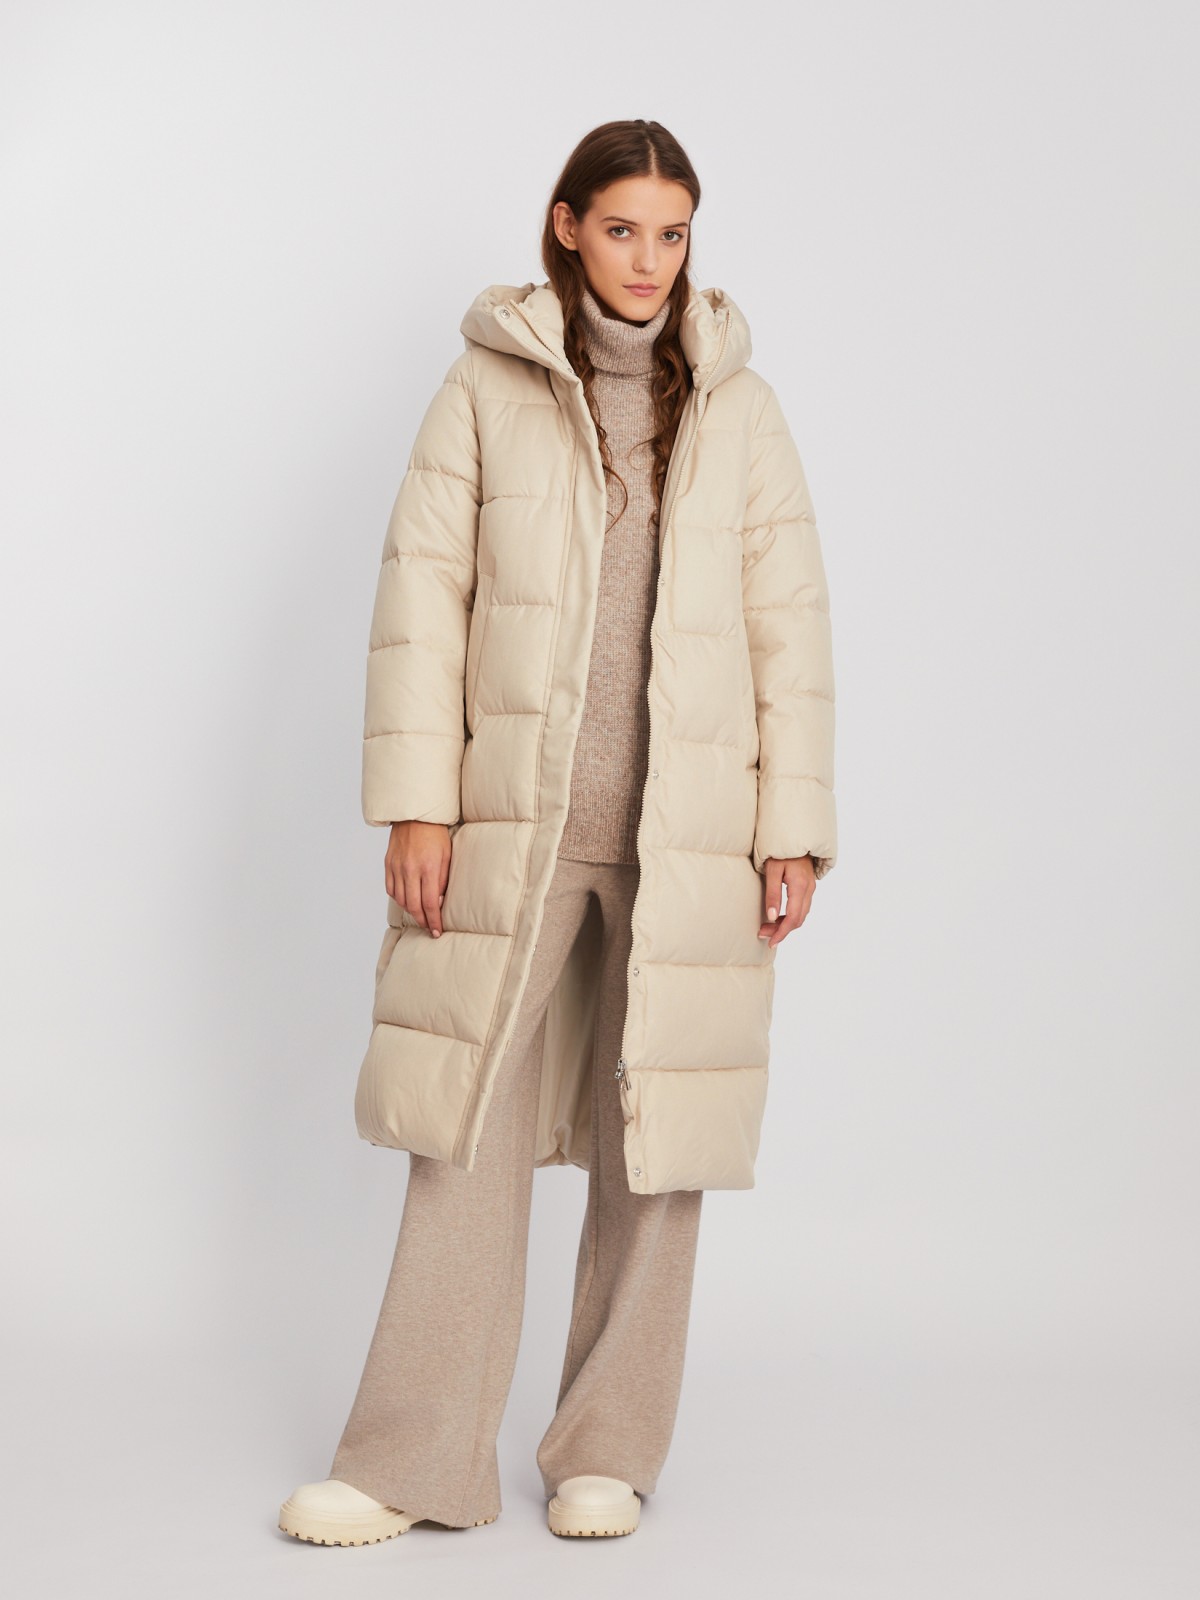 Тёплая длинная куртка-пальто с капюшоном zolla 02342520L044, цвет молоко, размер XS - фото 2